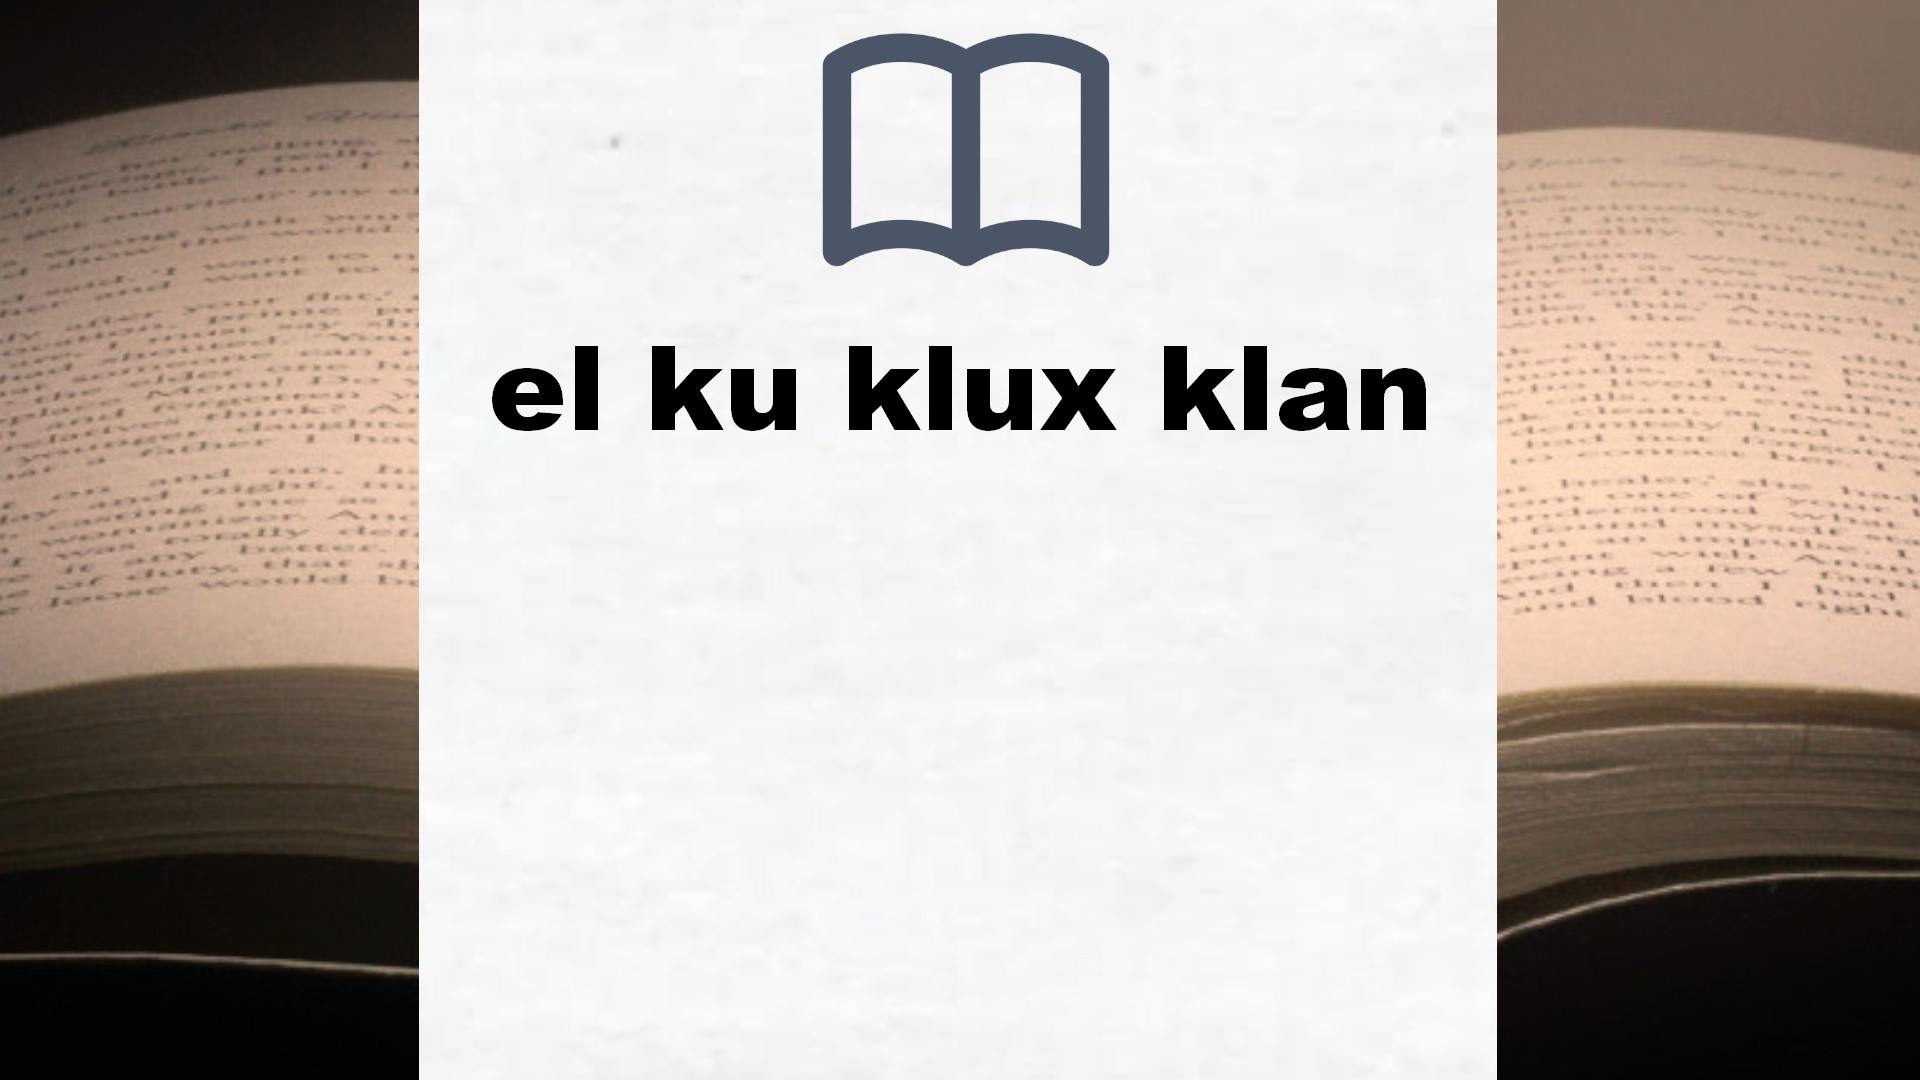 Libros sobre el ku klux klan